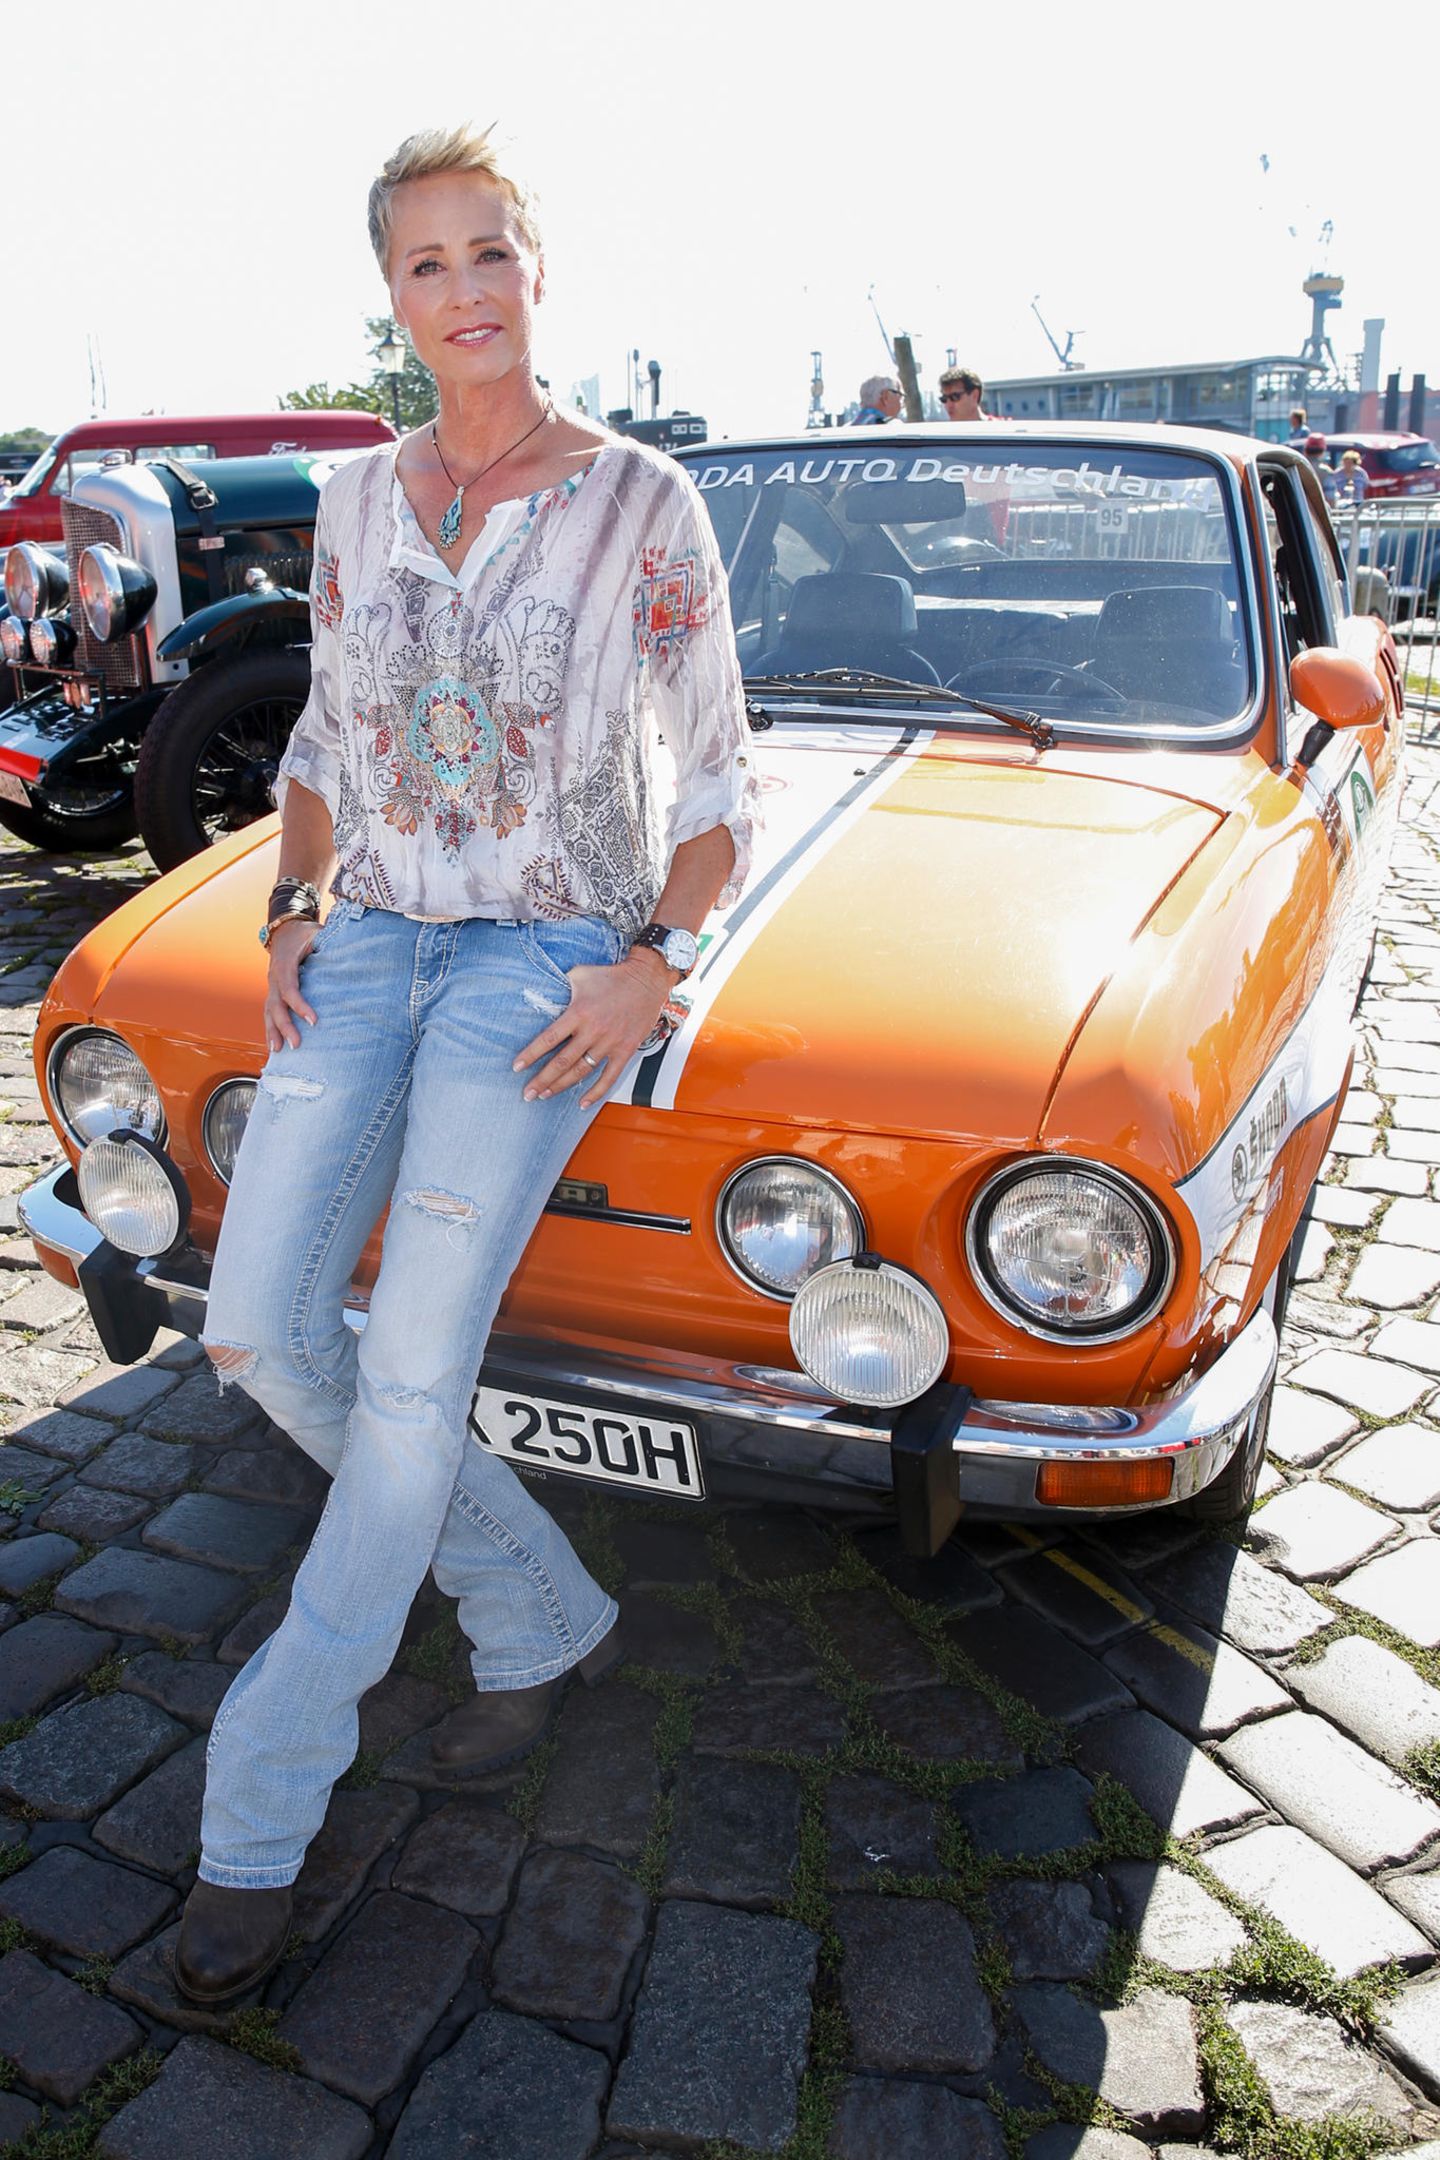 90er Moderatorinnen: Sonja Zietlow sitzt auf einem Auto